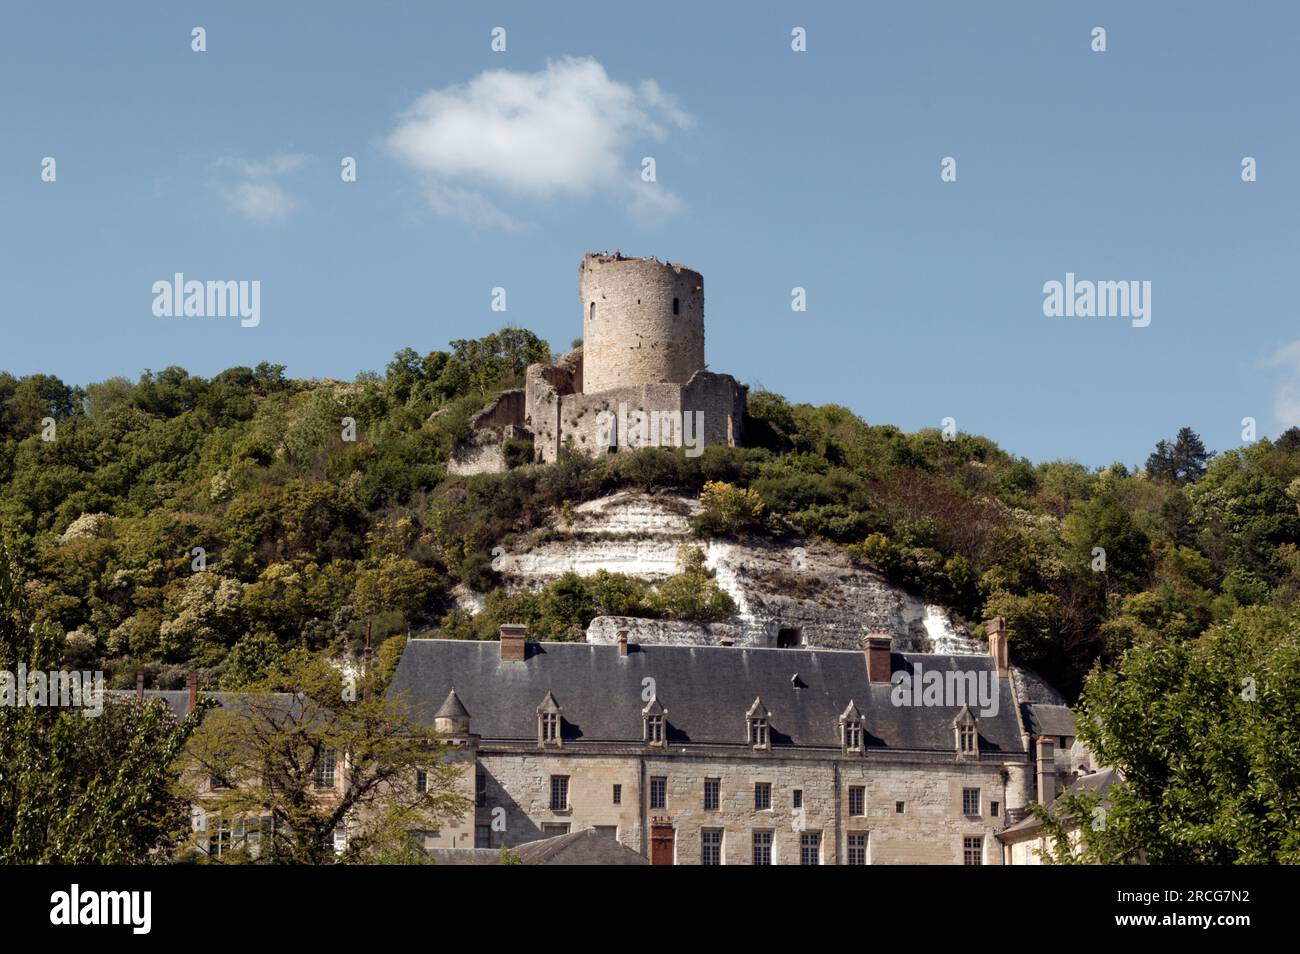 Vieux château, la Roche-Guyon, Val d Oise, France Banque D'Images